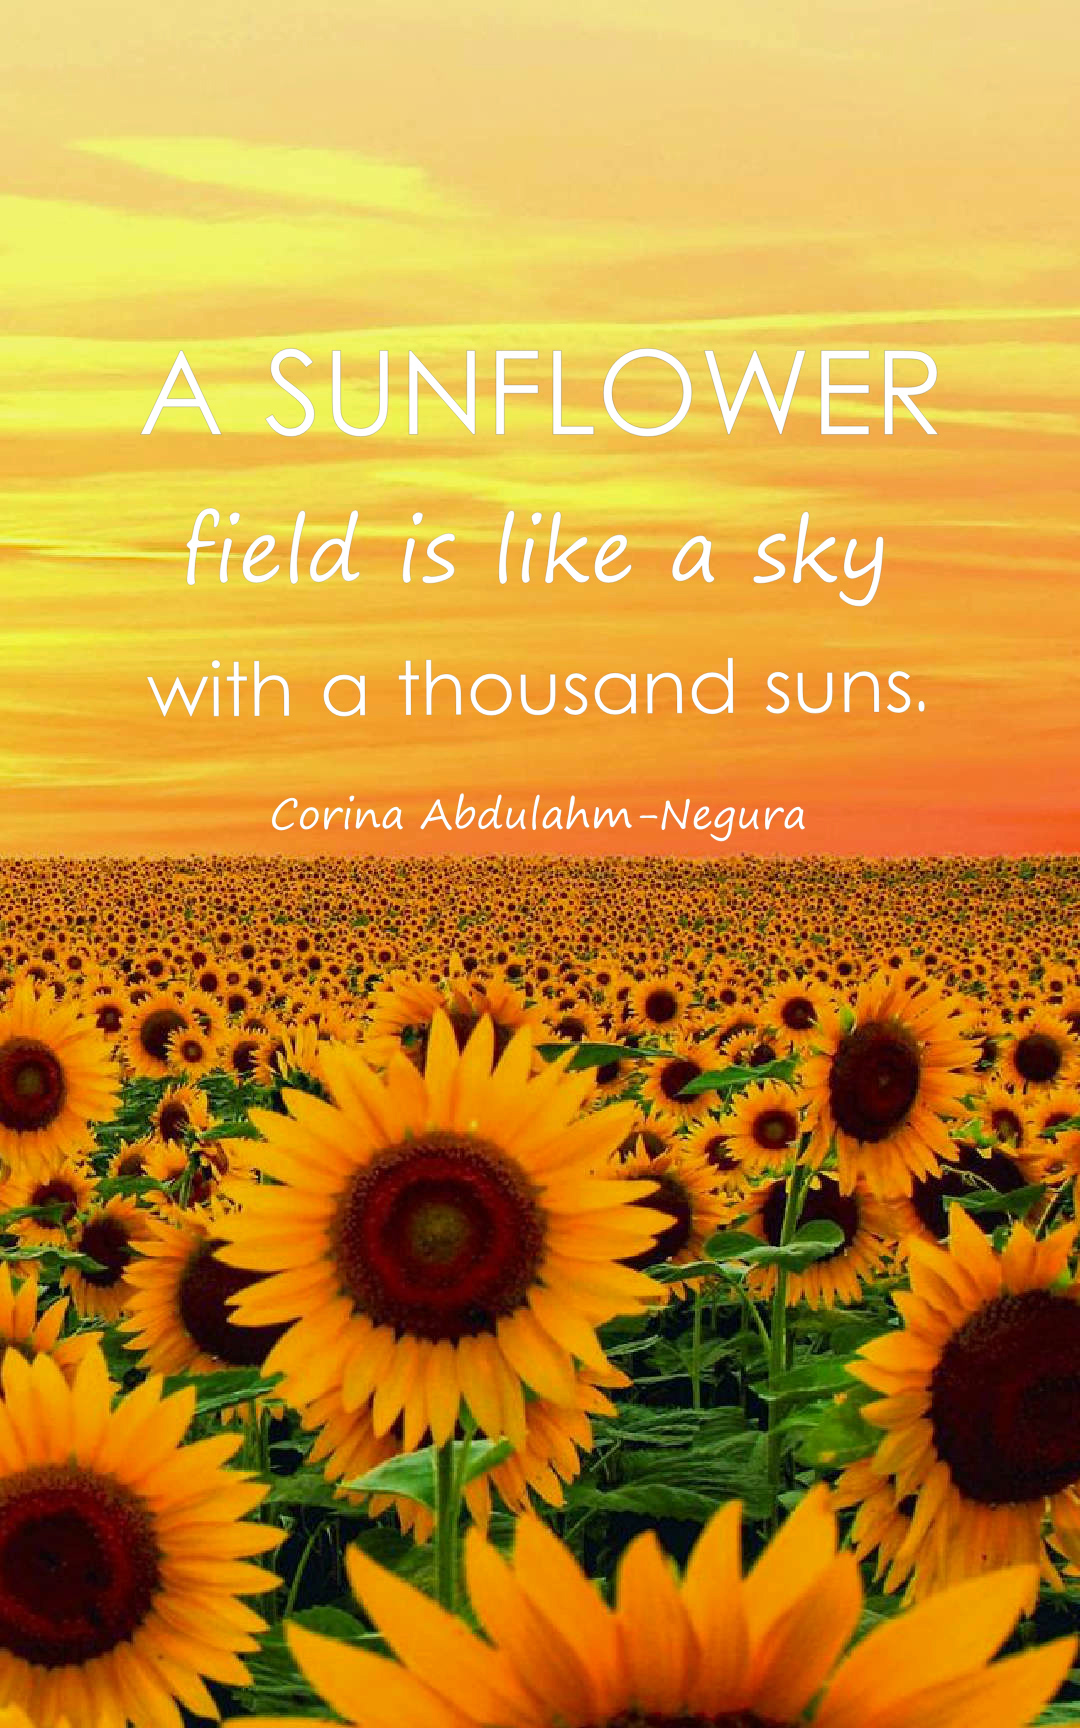 A sunflower field is like a sky with a thousand suns.